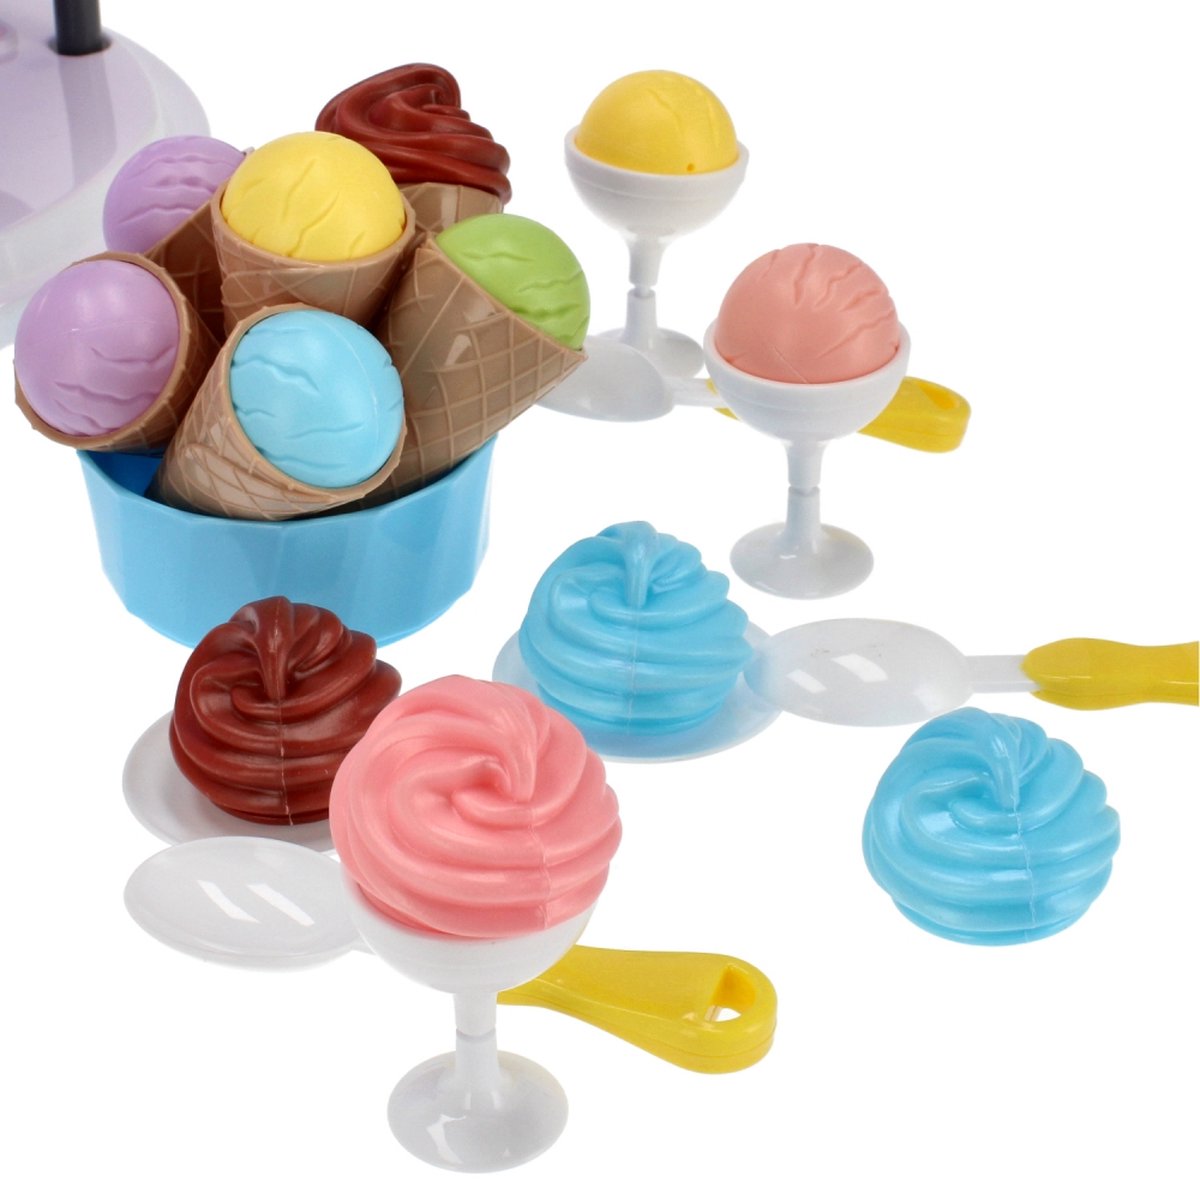 <tc>Ariko</tc>  Spielzeugkoffer Eisdielenwagen Shop 68 Teile - Softeis, italienisches Eis, Geschirr, Waffeln und vieles mehr - praktischer Koffer zum Mitnehmen